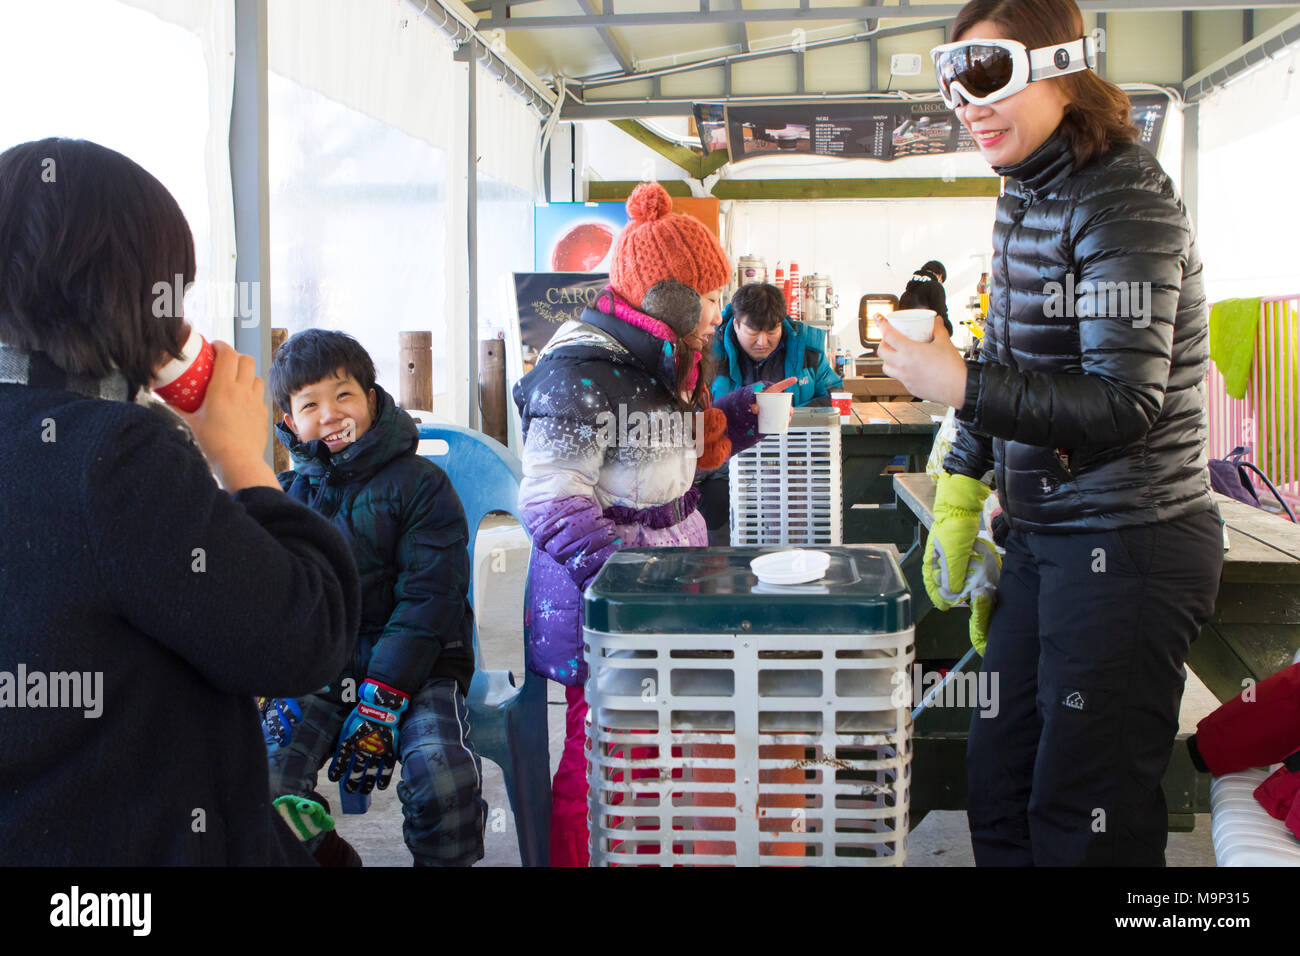 Eine Asiatische suchen Familie befindet sich in der Aufwärmphase in einem Zelt, neben einer Heizung mit heißer Schokolade. Das Yongpyong-resort (Dragon Valley) Ski Resort ist ein Skigebiet in Südkorea, in Daegwallyeong-myeon, Pyeongchang, Gangwon-do. Es ist die größte Ski- und Snowboard Resorts in Korea. Das Yongpyong-resort bewirten die technischen Ski alpin Veranstaltungen für die olympischen Winterspiele und Paralympics 2018 in Pyeongchang. Einige Szenen der 2002 Korean Broadcasting System drama Winter Sonata wurden im Resort gedreht. Stockfoto